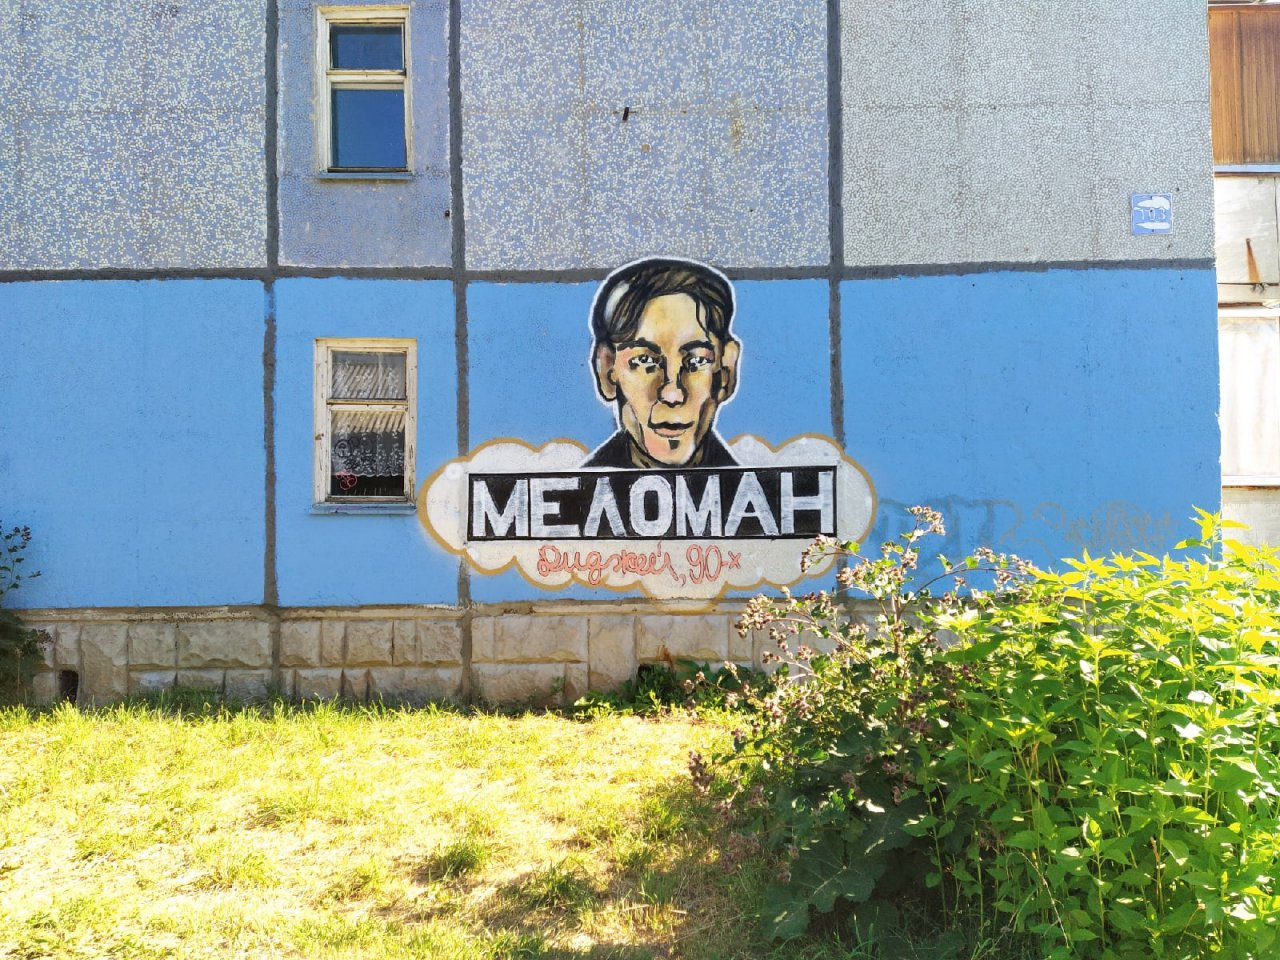 В Сыктывкаре появилось граффити с Меломаном: законно ли оно и почему такие рисунки портят облик города